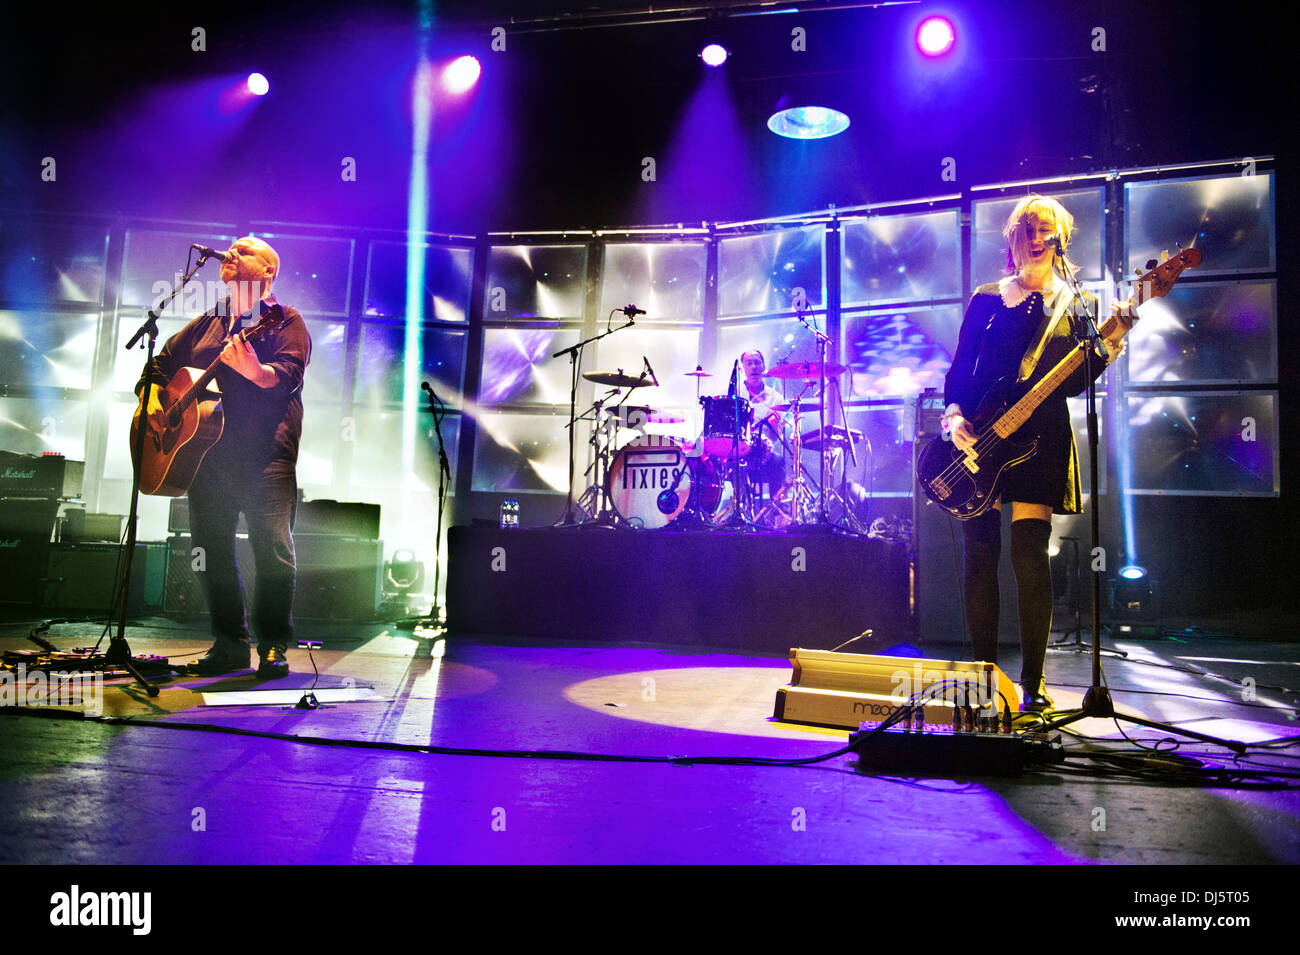 Manchester, UK. 21 novembre 2013. Le groupe de rock américain Pixies en concert à l'O2 Apollo, Manchester, Royaume-Uni. David Lovering (batterie), Black Francis (guitare) et Kim Shattuck (basse). Crédit : John Bentley/Alamy Live News Banque D'Images